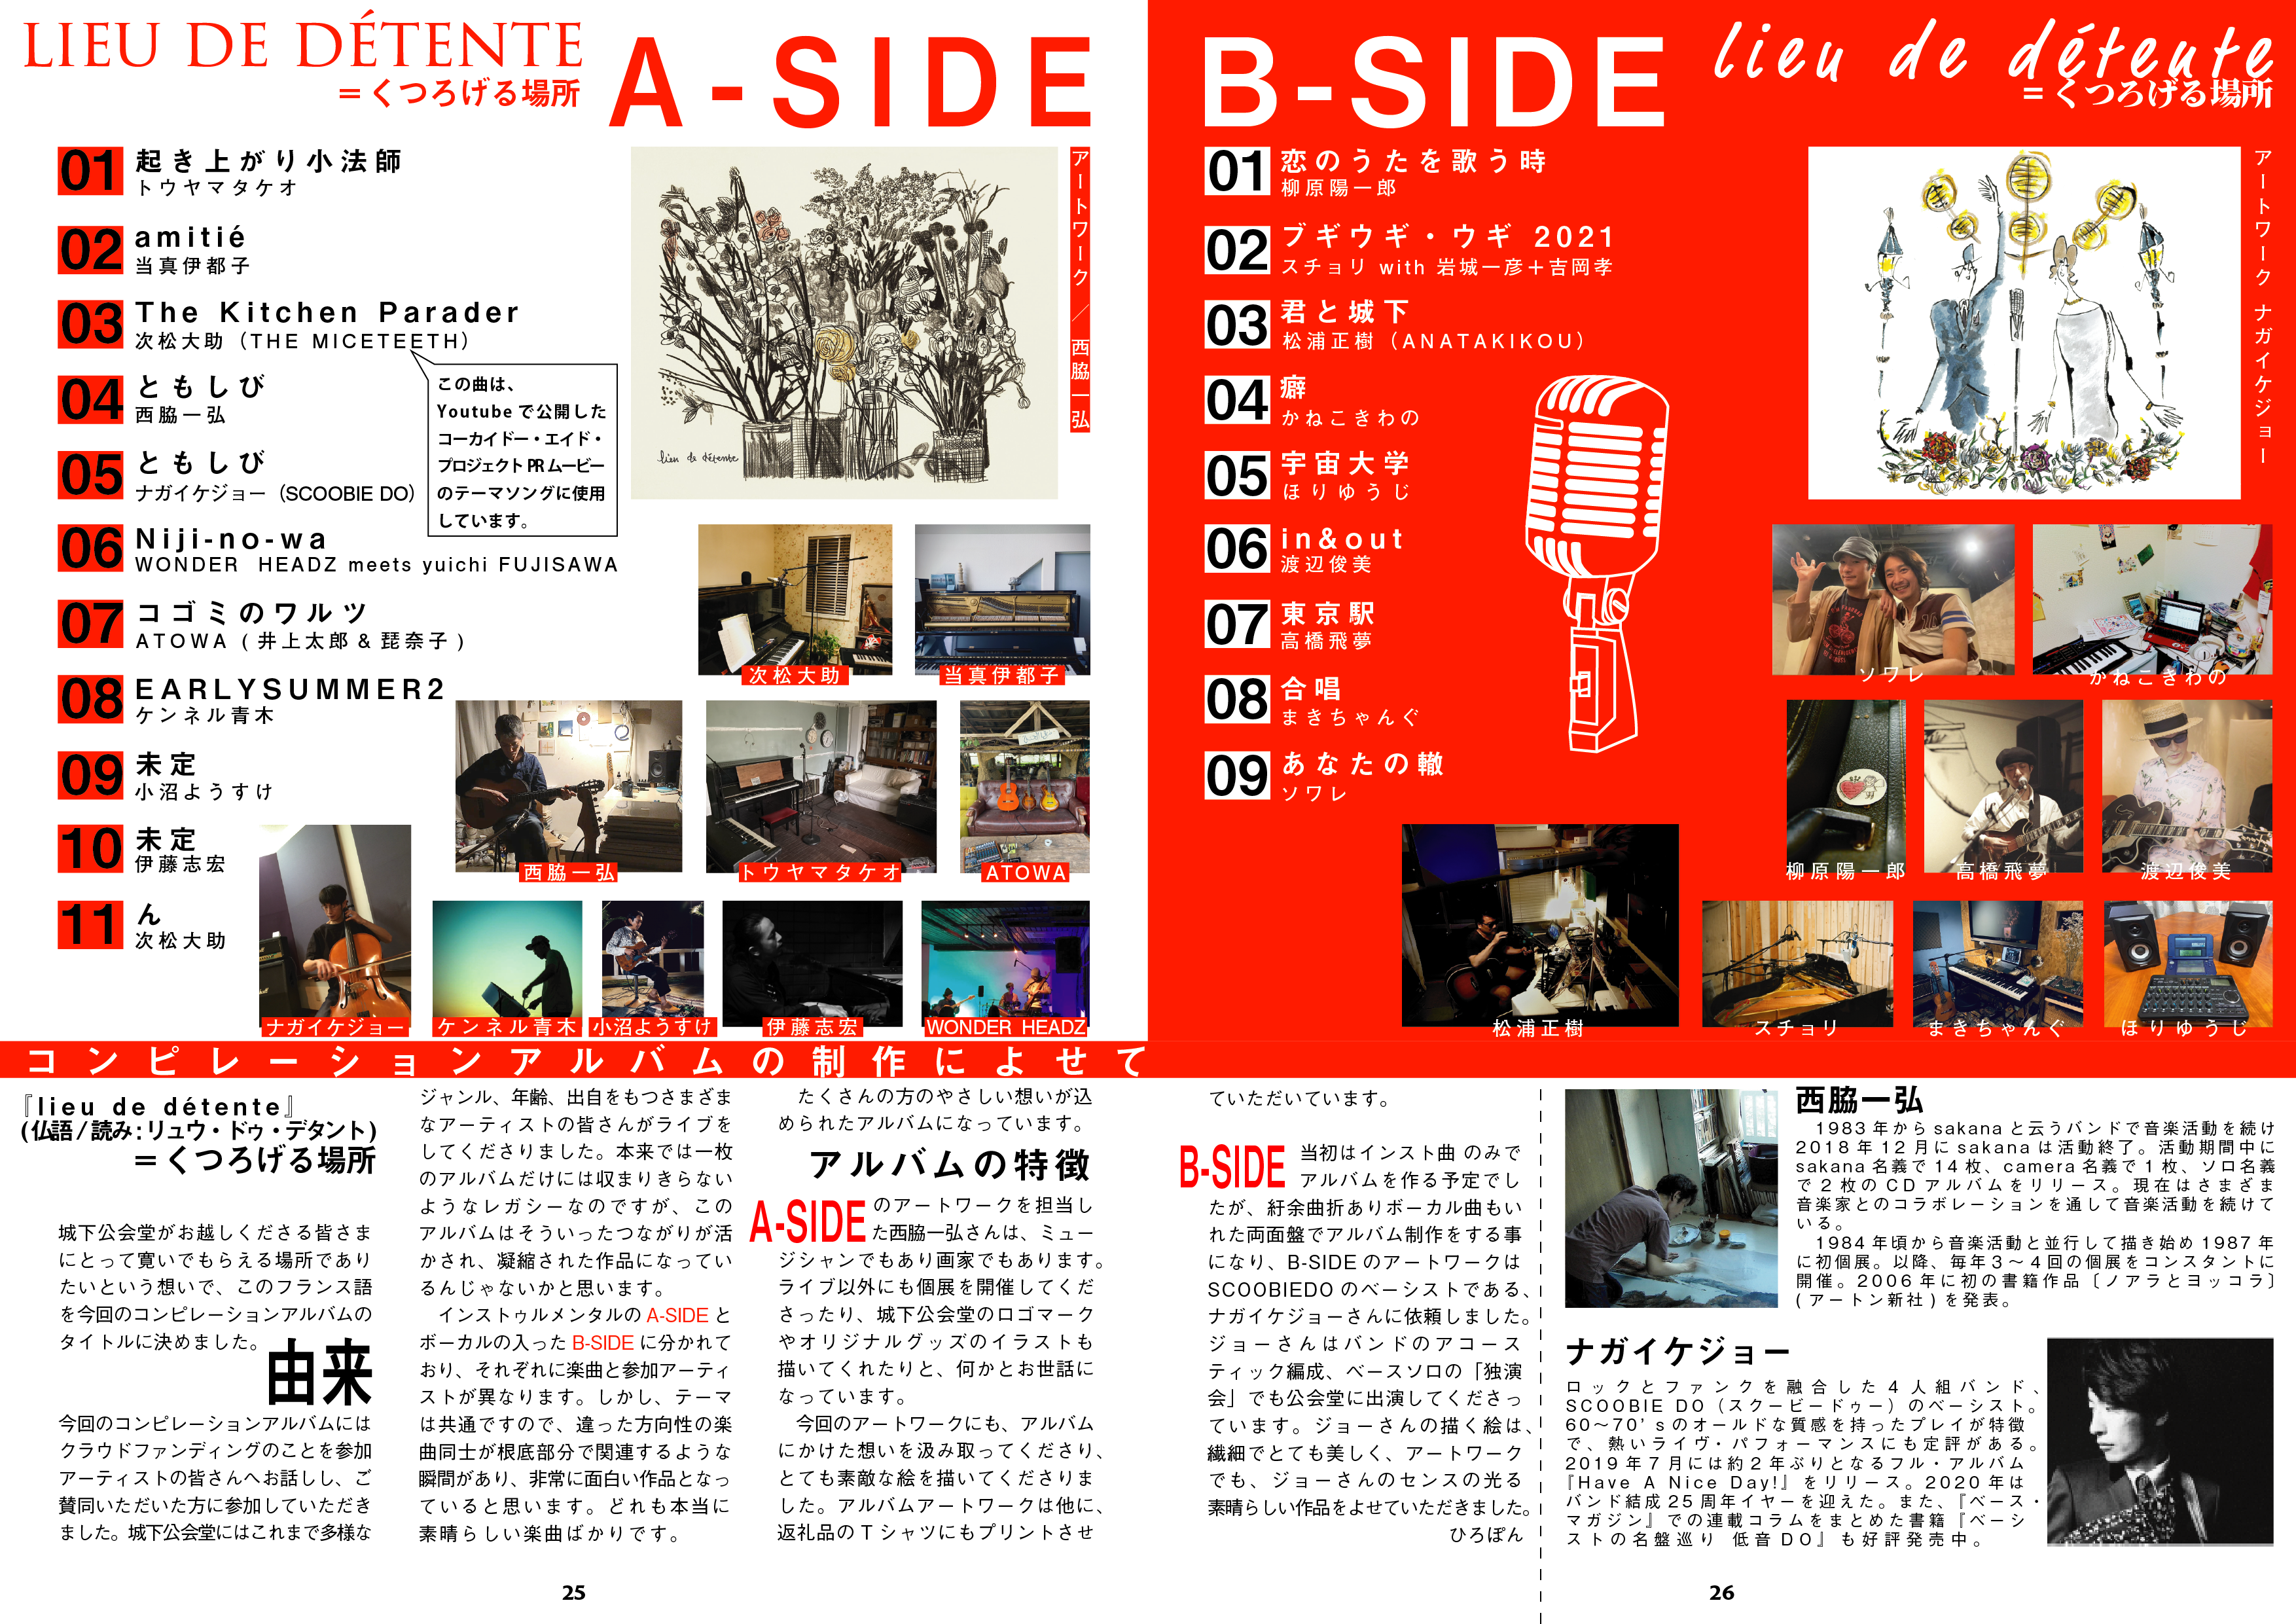 岡山・城下公会堂のコンピレーションアルバムに参加しました。